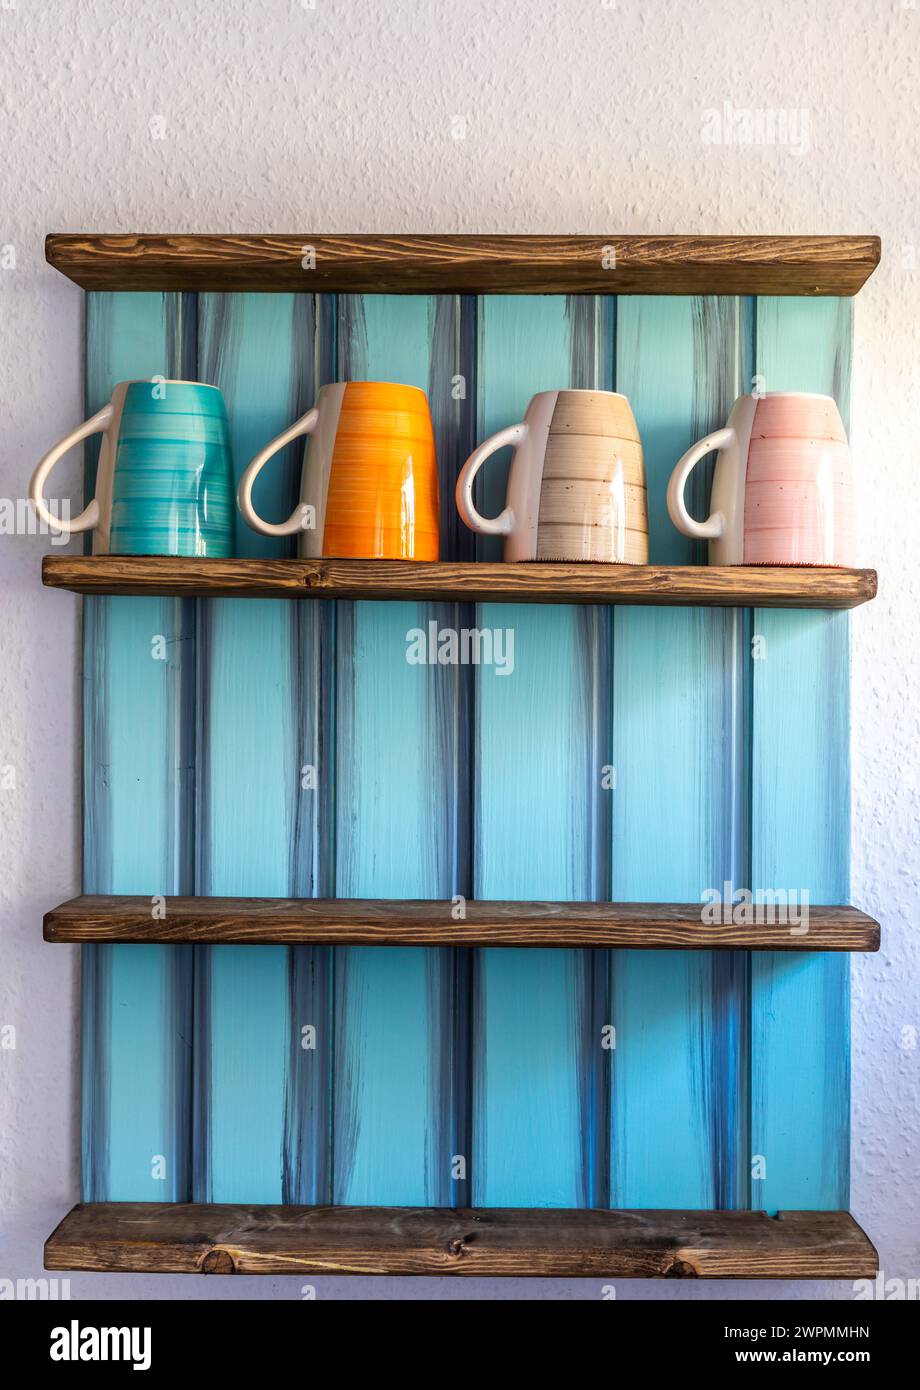 Tassen in verschiedenen Richtungen auf ein Regal gestellt Stock Photo